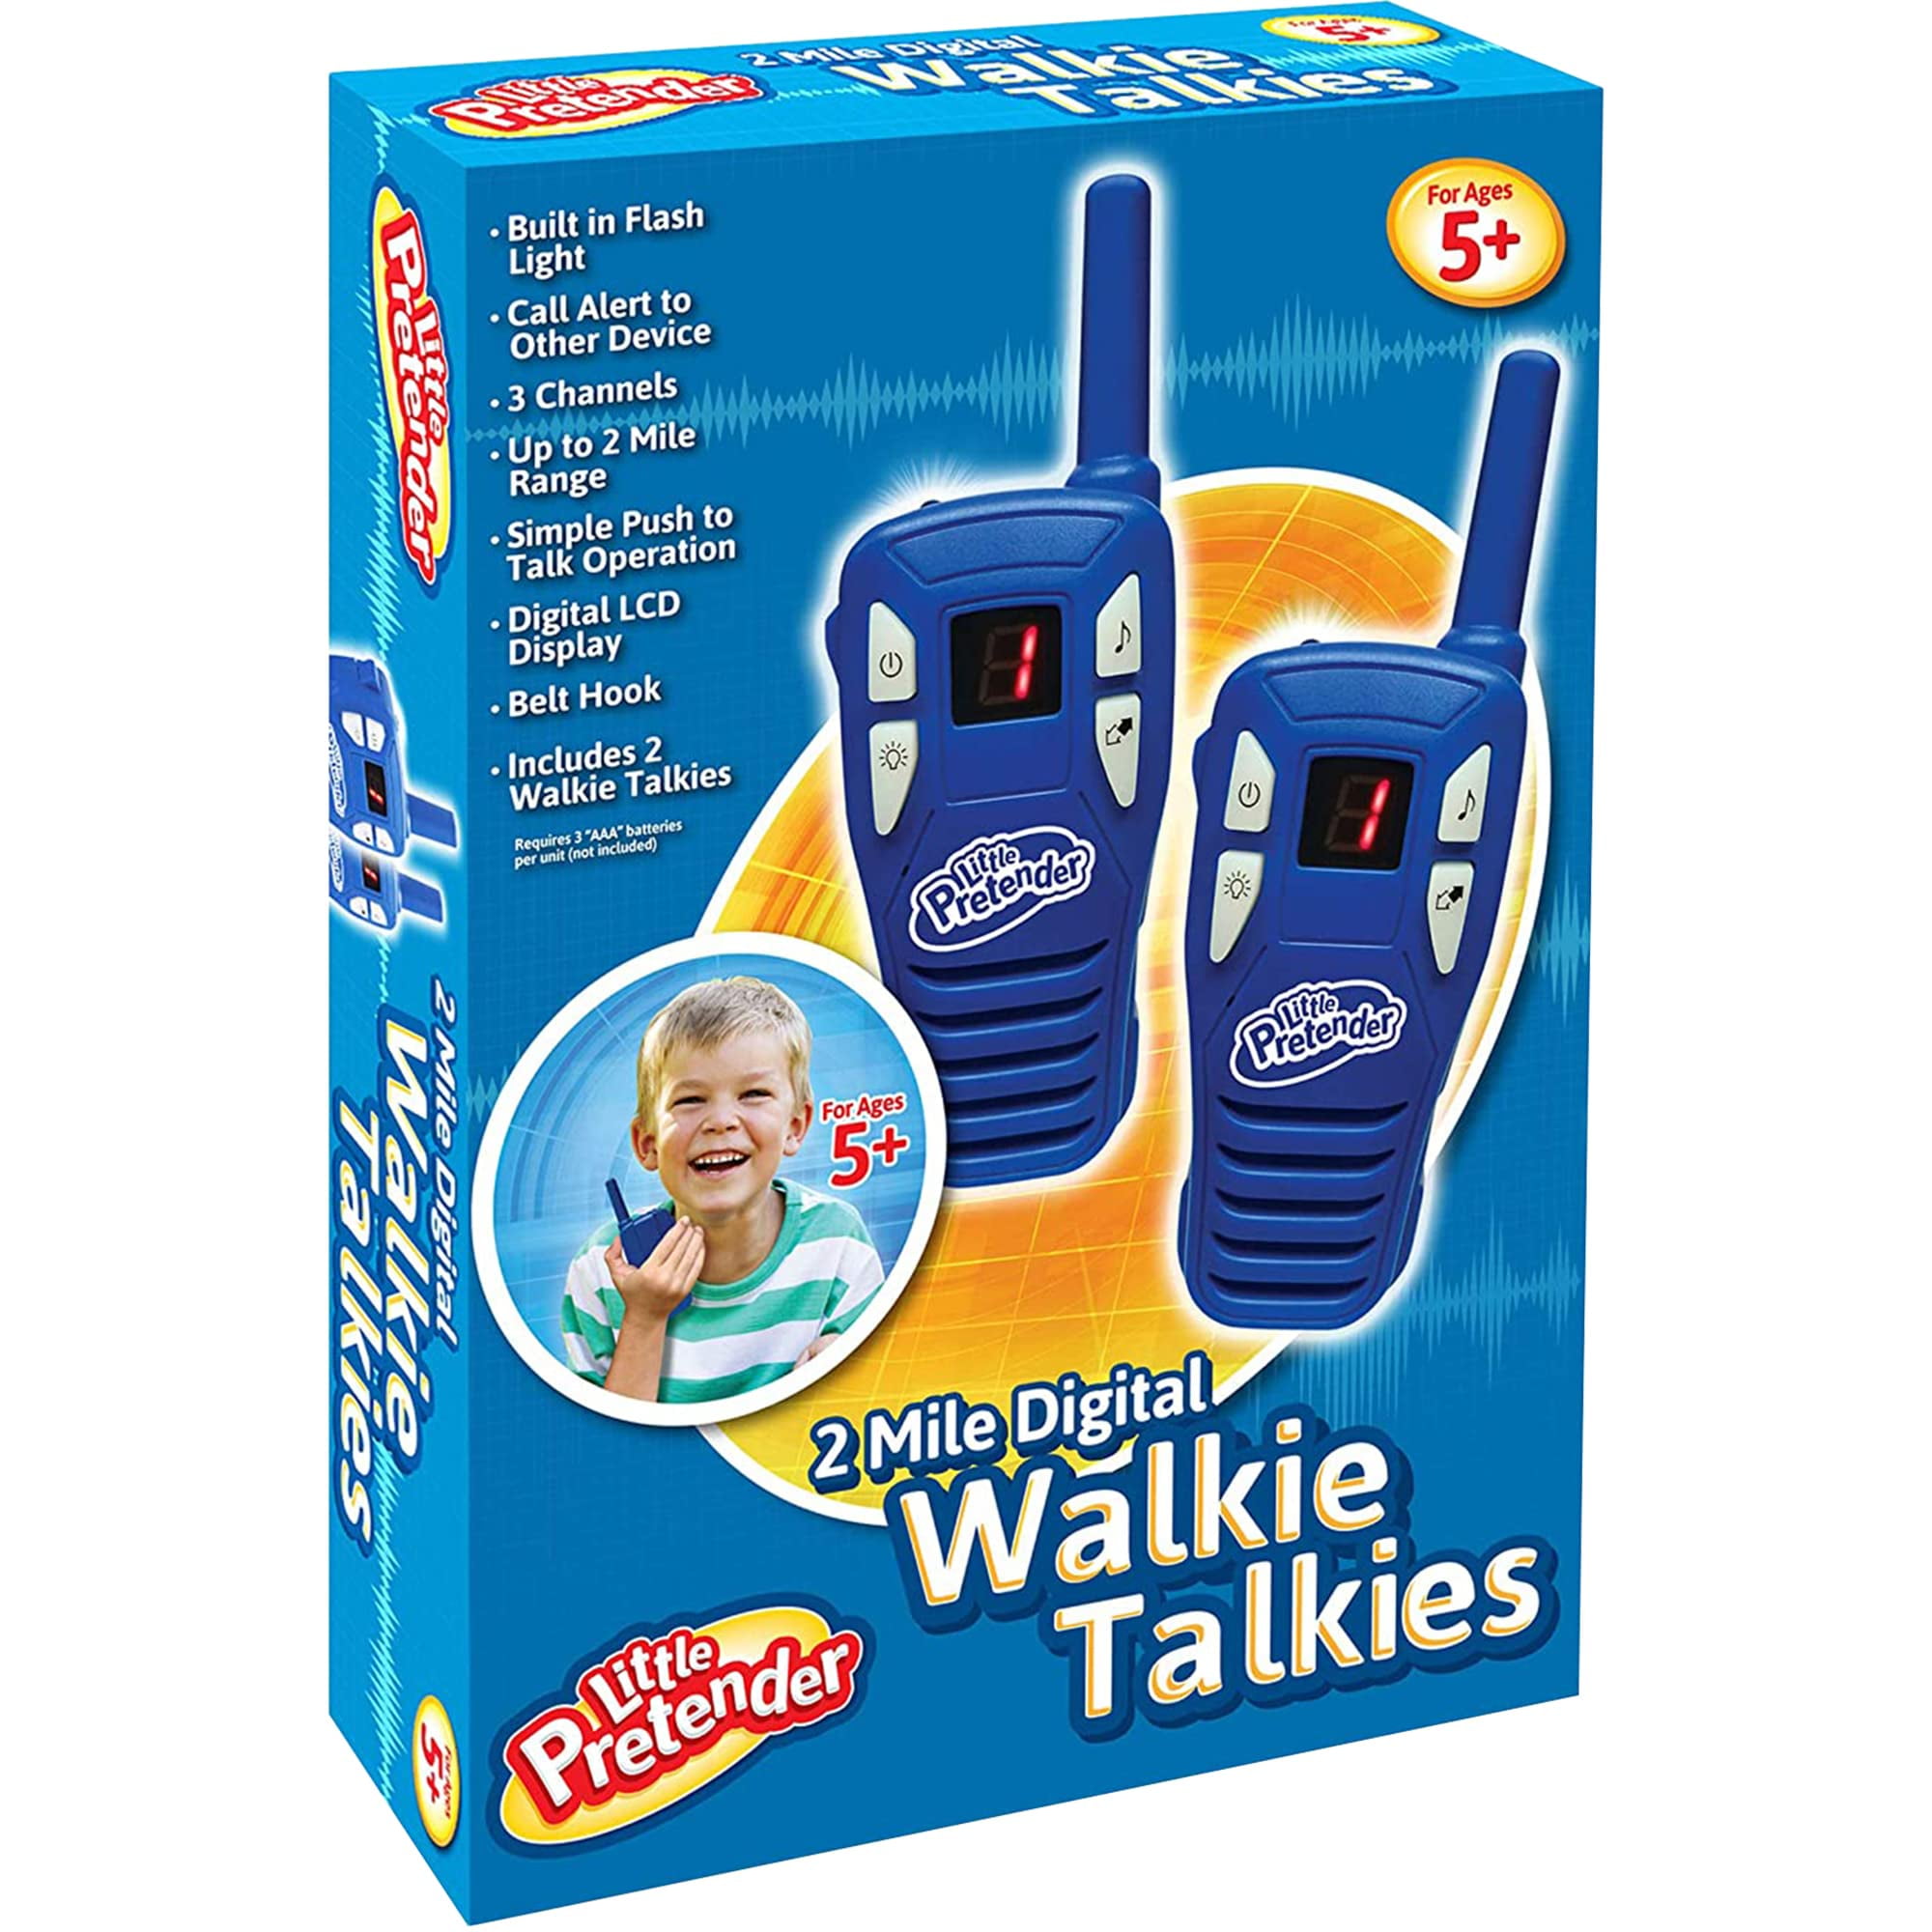 heltinde uendelig Skifte tøj Little Pretender Walkie Talkies for Kids, 2-mile Range, 3 Channels, Built  in Flash Light - Walmart.com